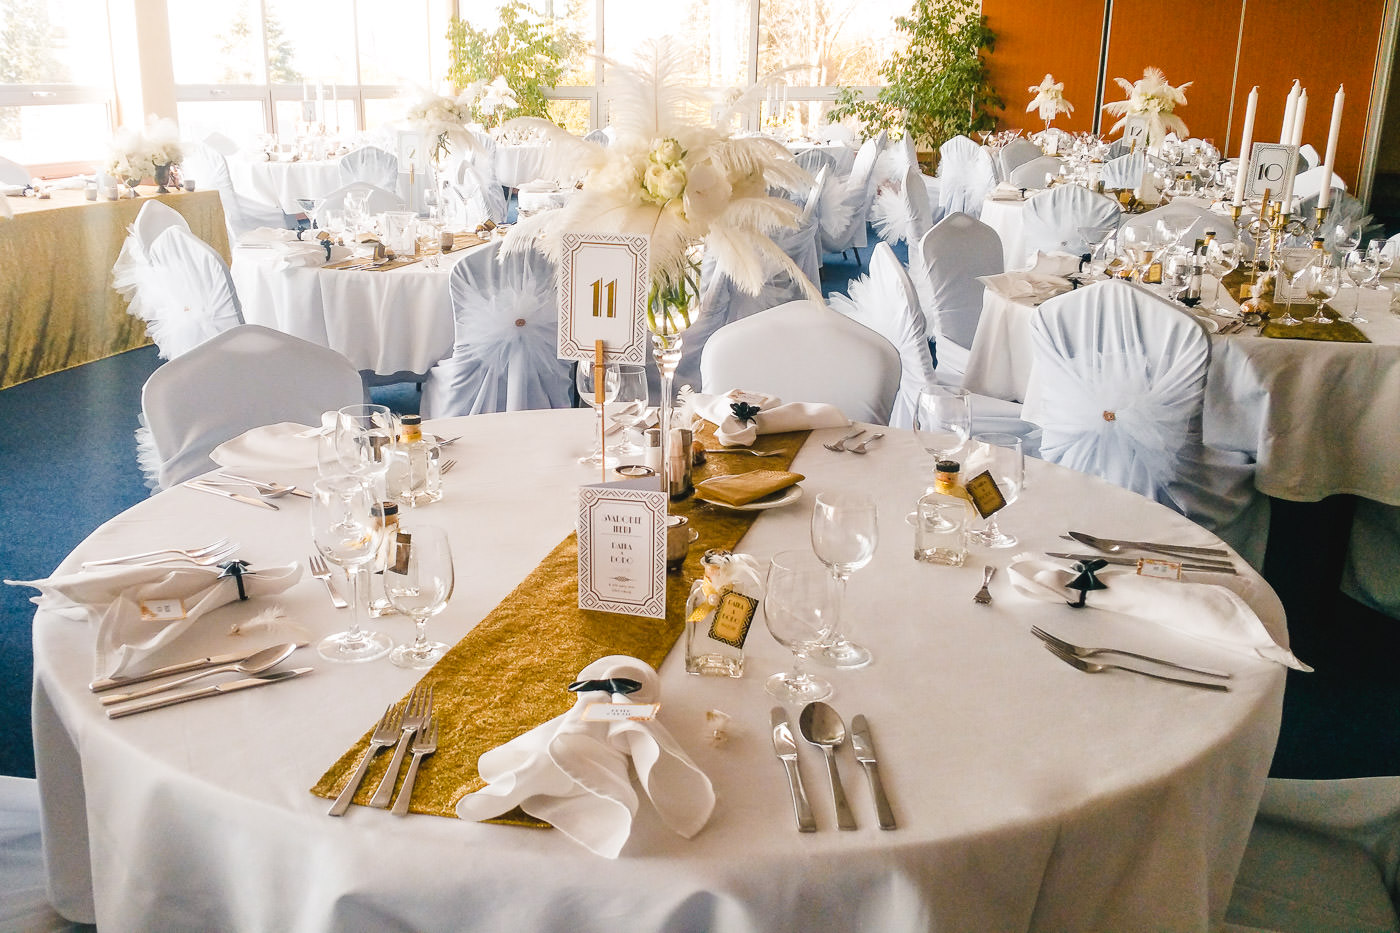 Susan&Sis decor – svadobna vyzdoba, dekorovanie- svadba na styl Great Gatsby – Velky Gatsby- biela jemna vyzdoba s pierkami, biele ruze, vela kvetov, stylova svadba